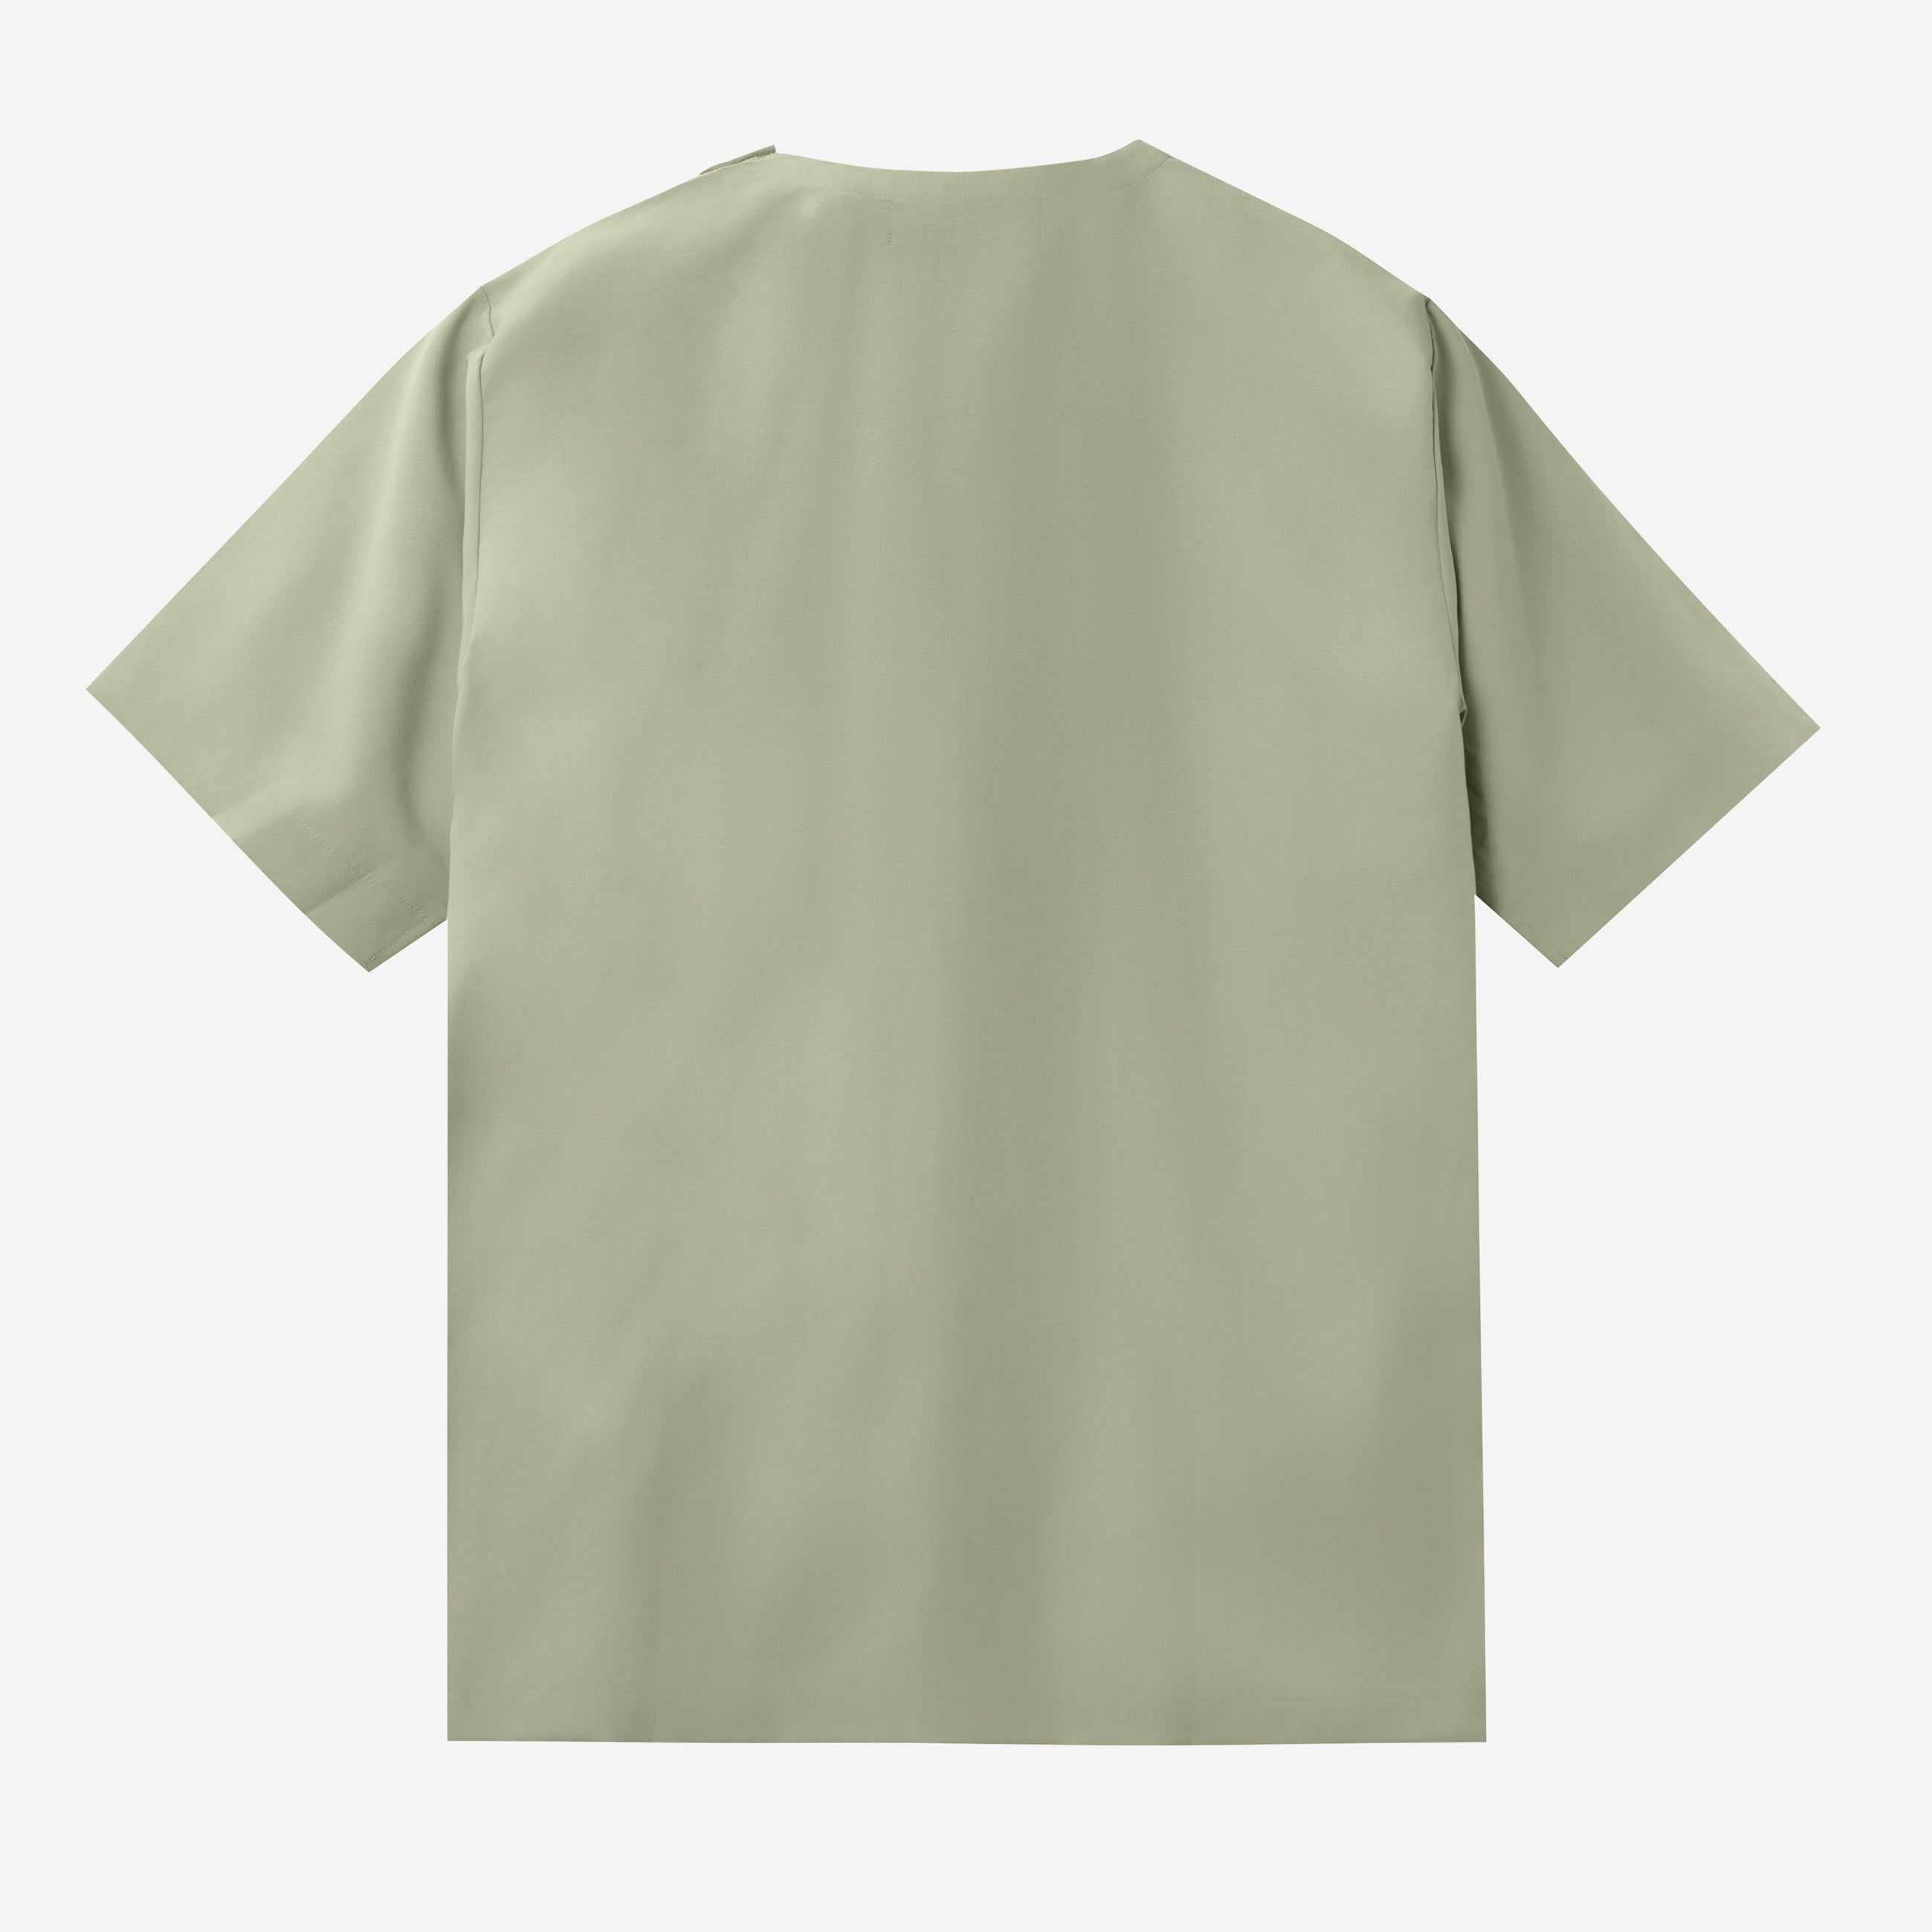 Rahab T-shirt - Soft Olive